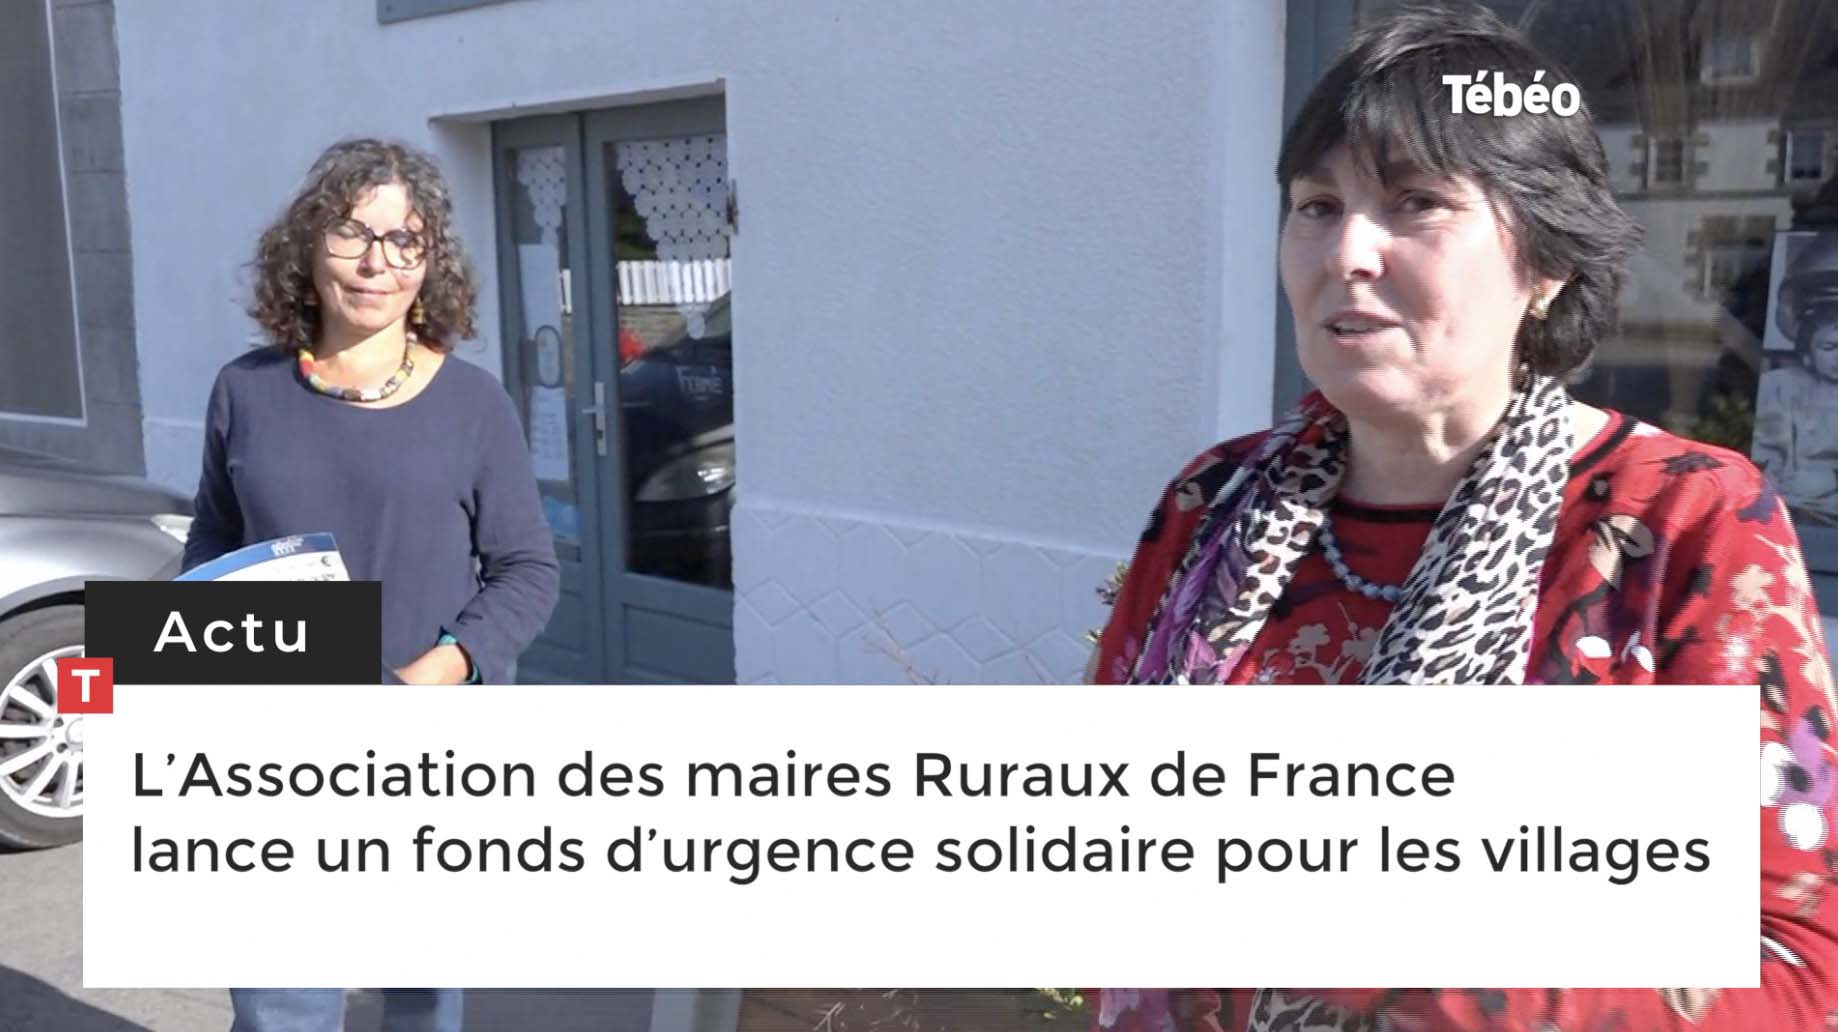 L’Association des maires Ruraux de France lance un fonds d’urgence solidaire pour les villages. (Le Télégramme)